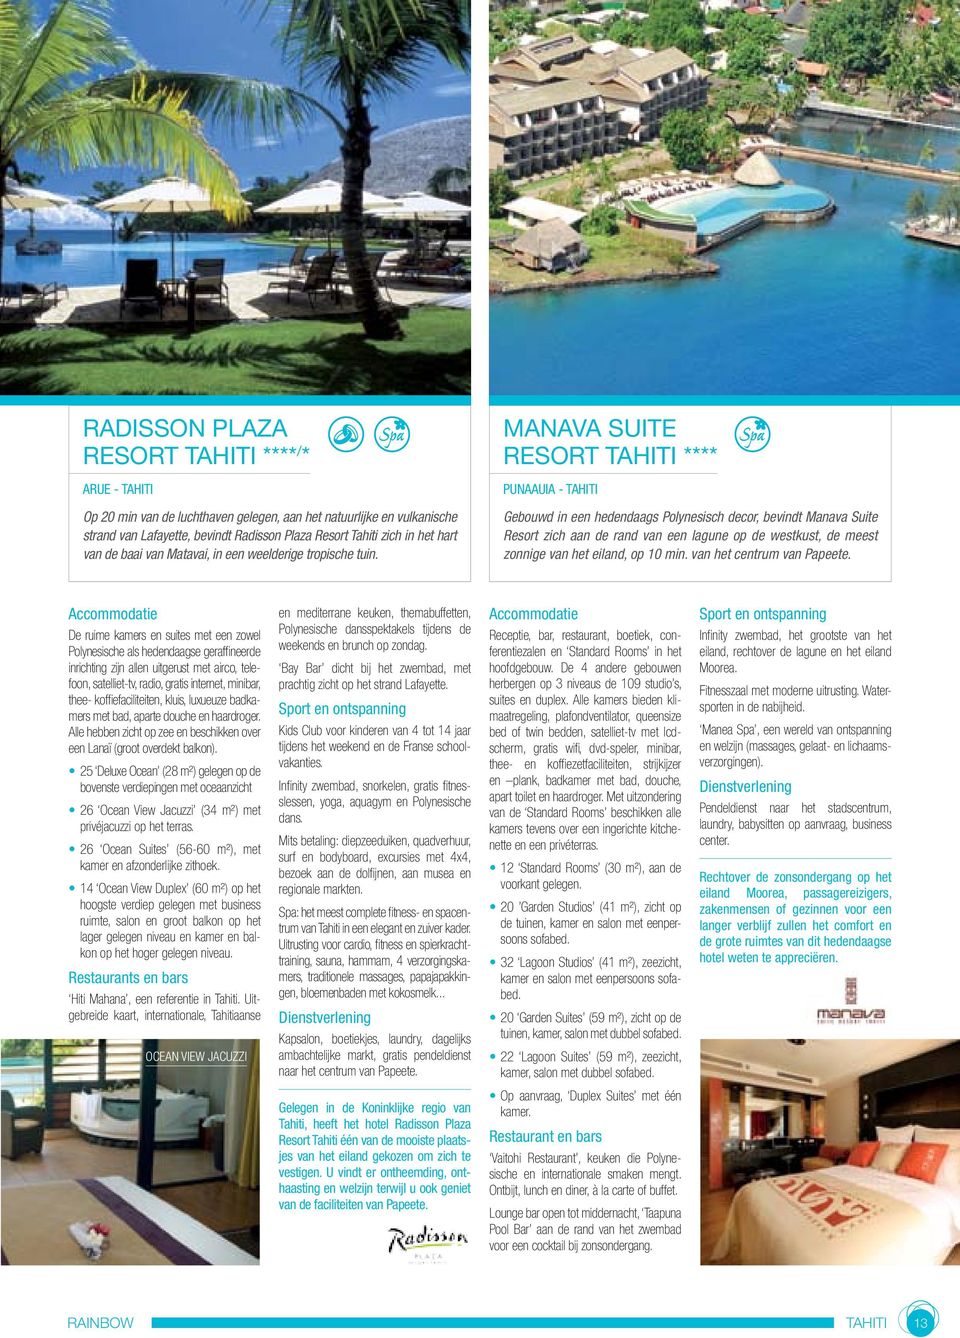 MANAVA SUITE RESORT TAHITI **** PUNAAUIA - TAHITI Gebouwd in een hedendaags Polynesisch decor, bevindt Manava Suite Resort zich aan de rand van een lagune op de westkust, de meest zonnige van het